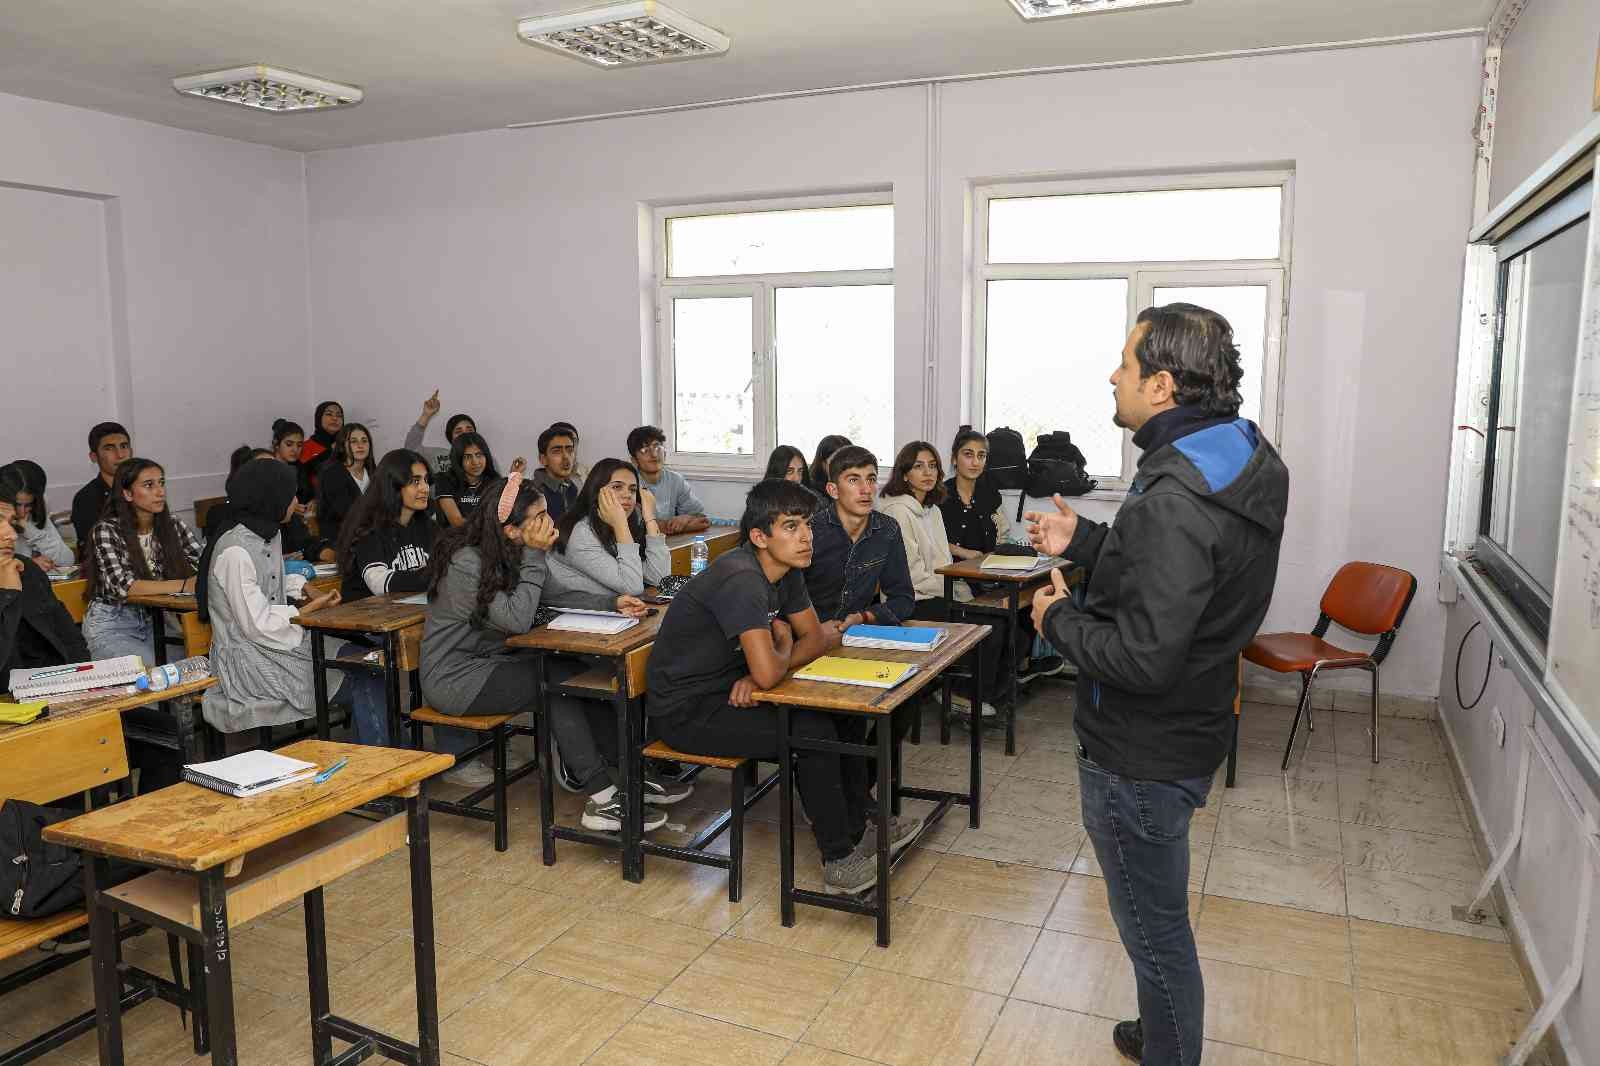 Etüt Van projesinde öğrenciler dersbaşı yaptı